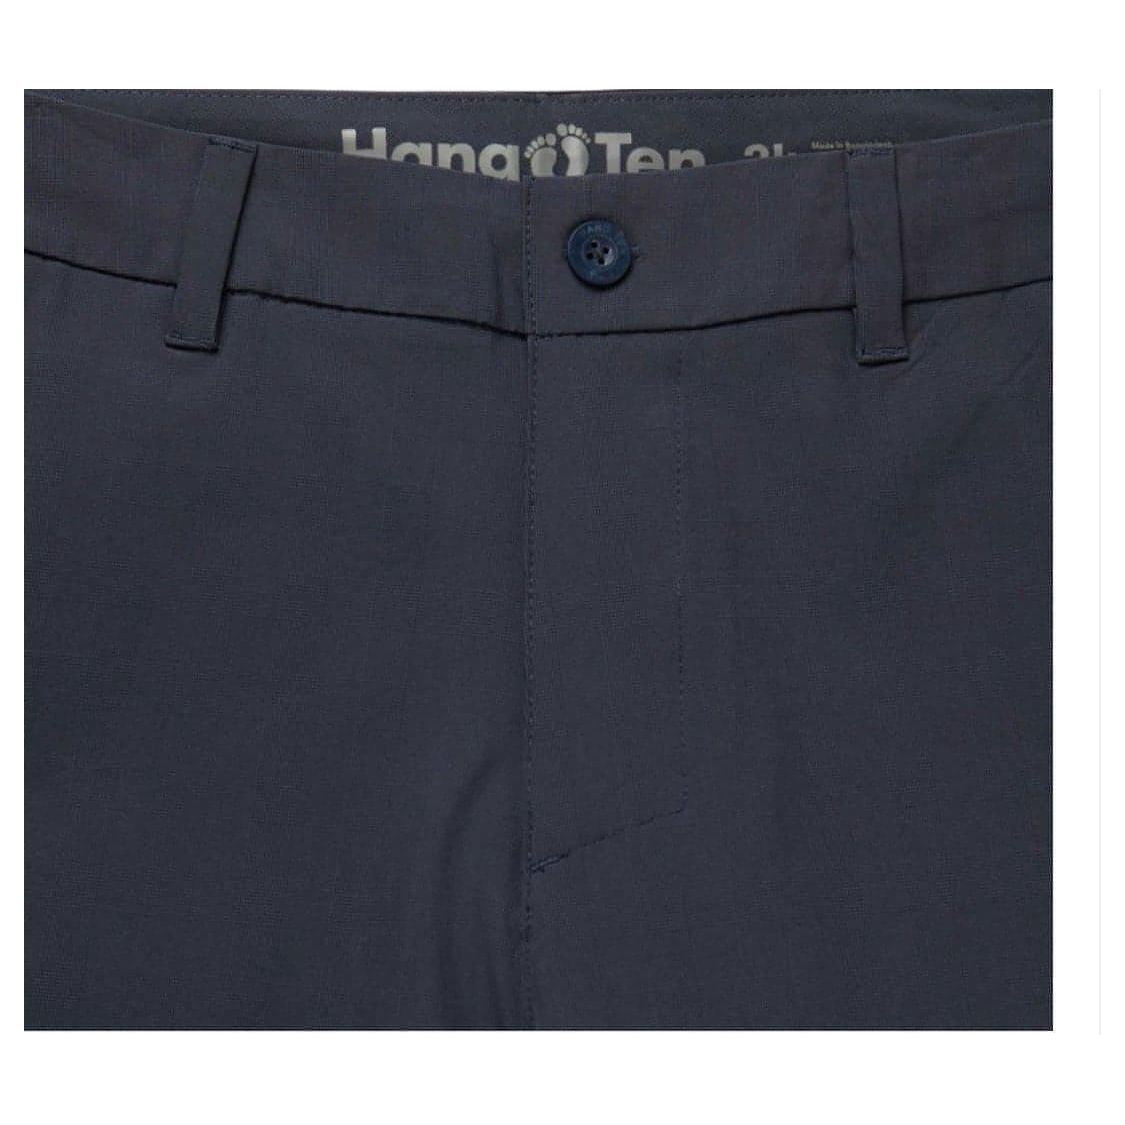 Hang Ten Men’s Hybrid Shorts, Dark Navy